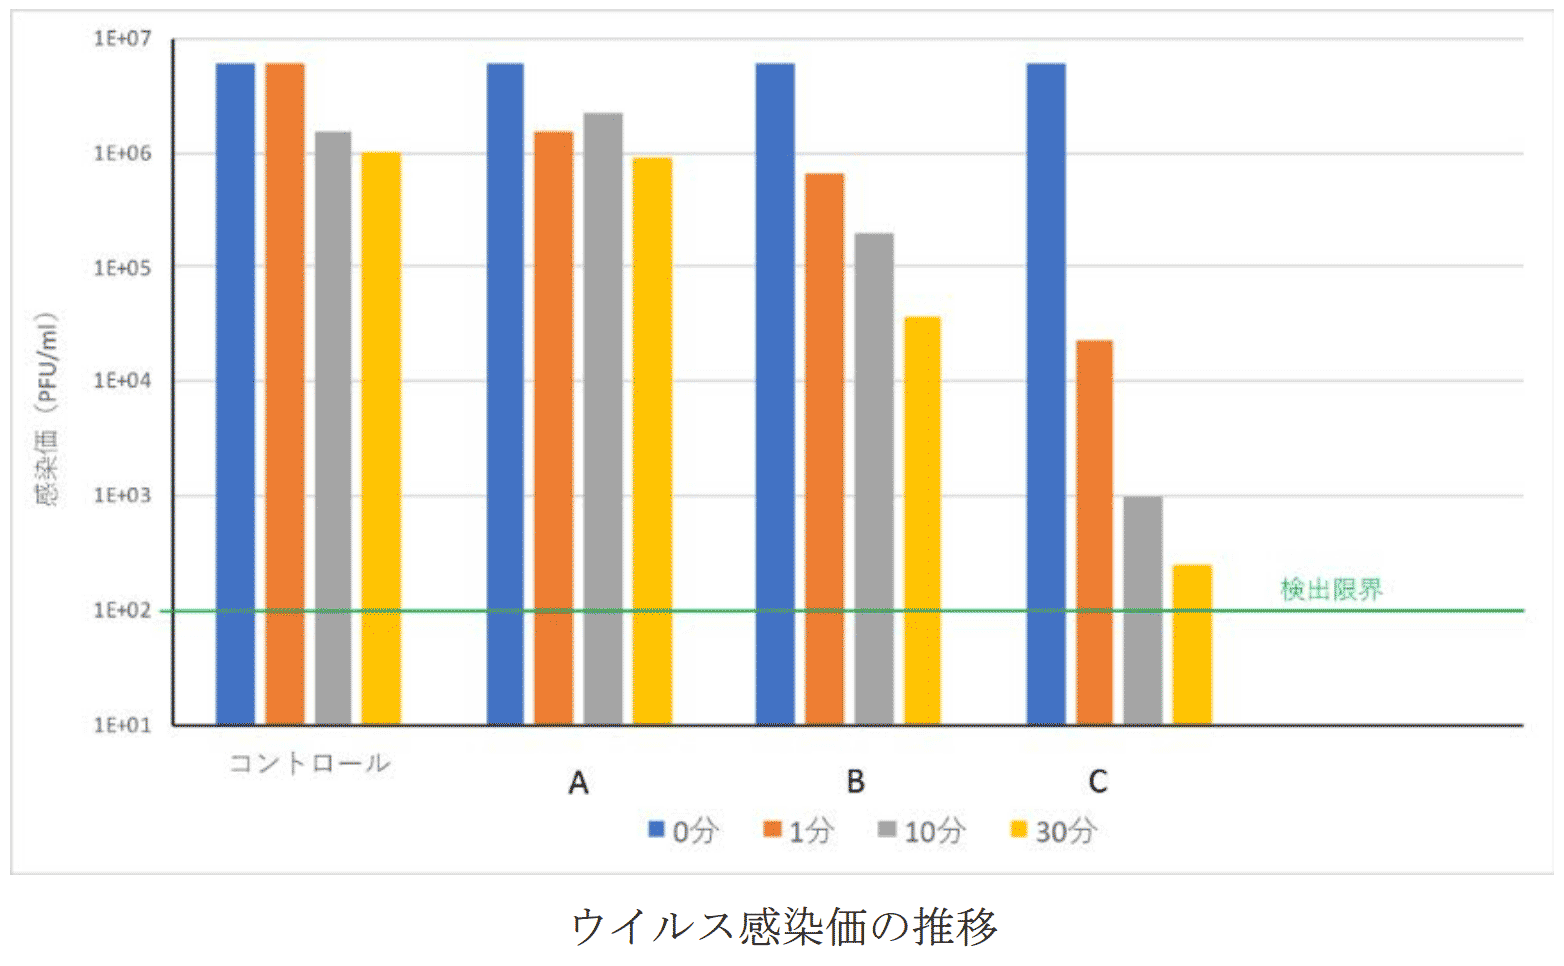 奈良県立医科大学の一般公開資料（プレスリリース）では、お茶A、B、Cのコロナ不活化効果をグラフで示しています。奈良県立医科大学の一般公開資料（プレスリリース）では、お茶A、B、Cのコロナ不活化効果をグラフで示しています。